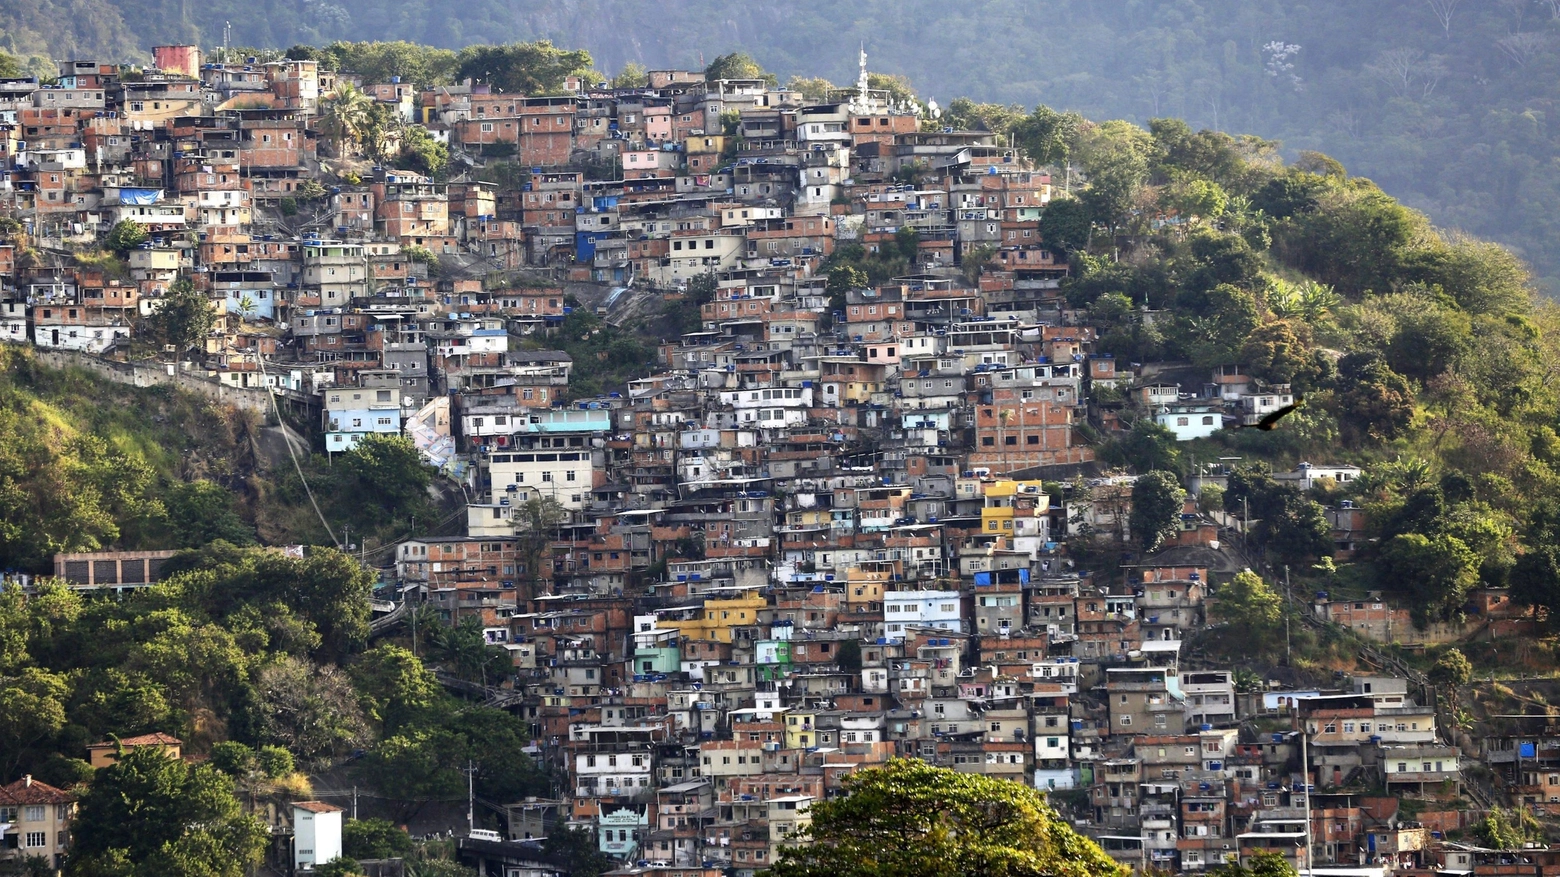 La favela Morro dos Prazeres in Brazile